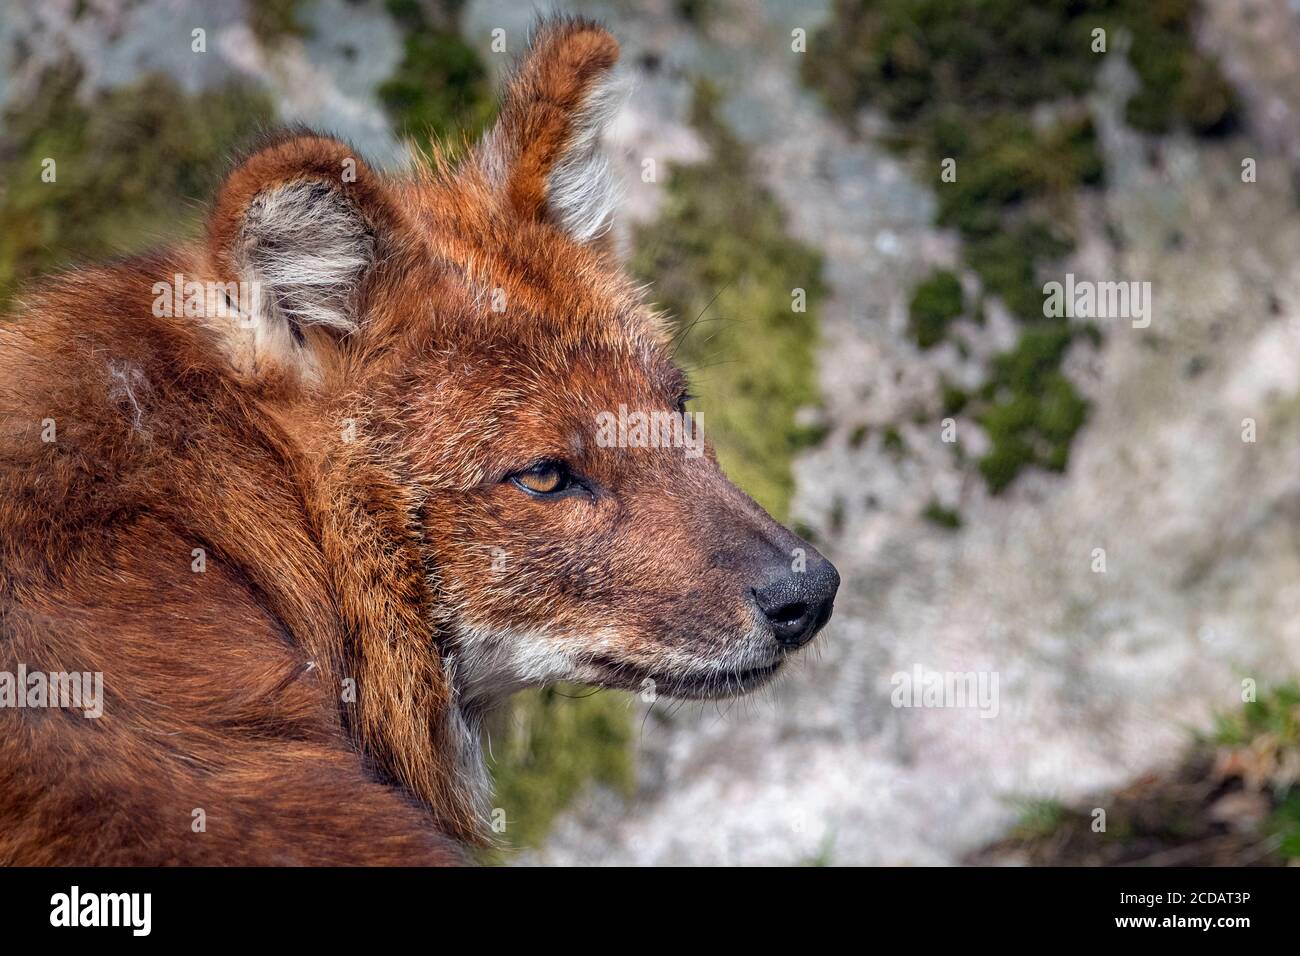 Asiatic wild dog (dhole), profile Stock Photo